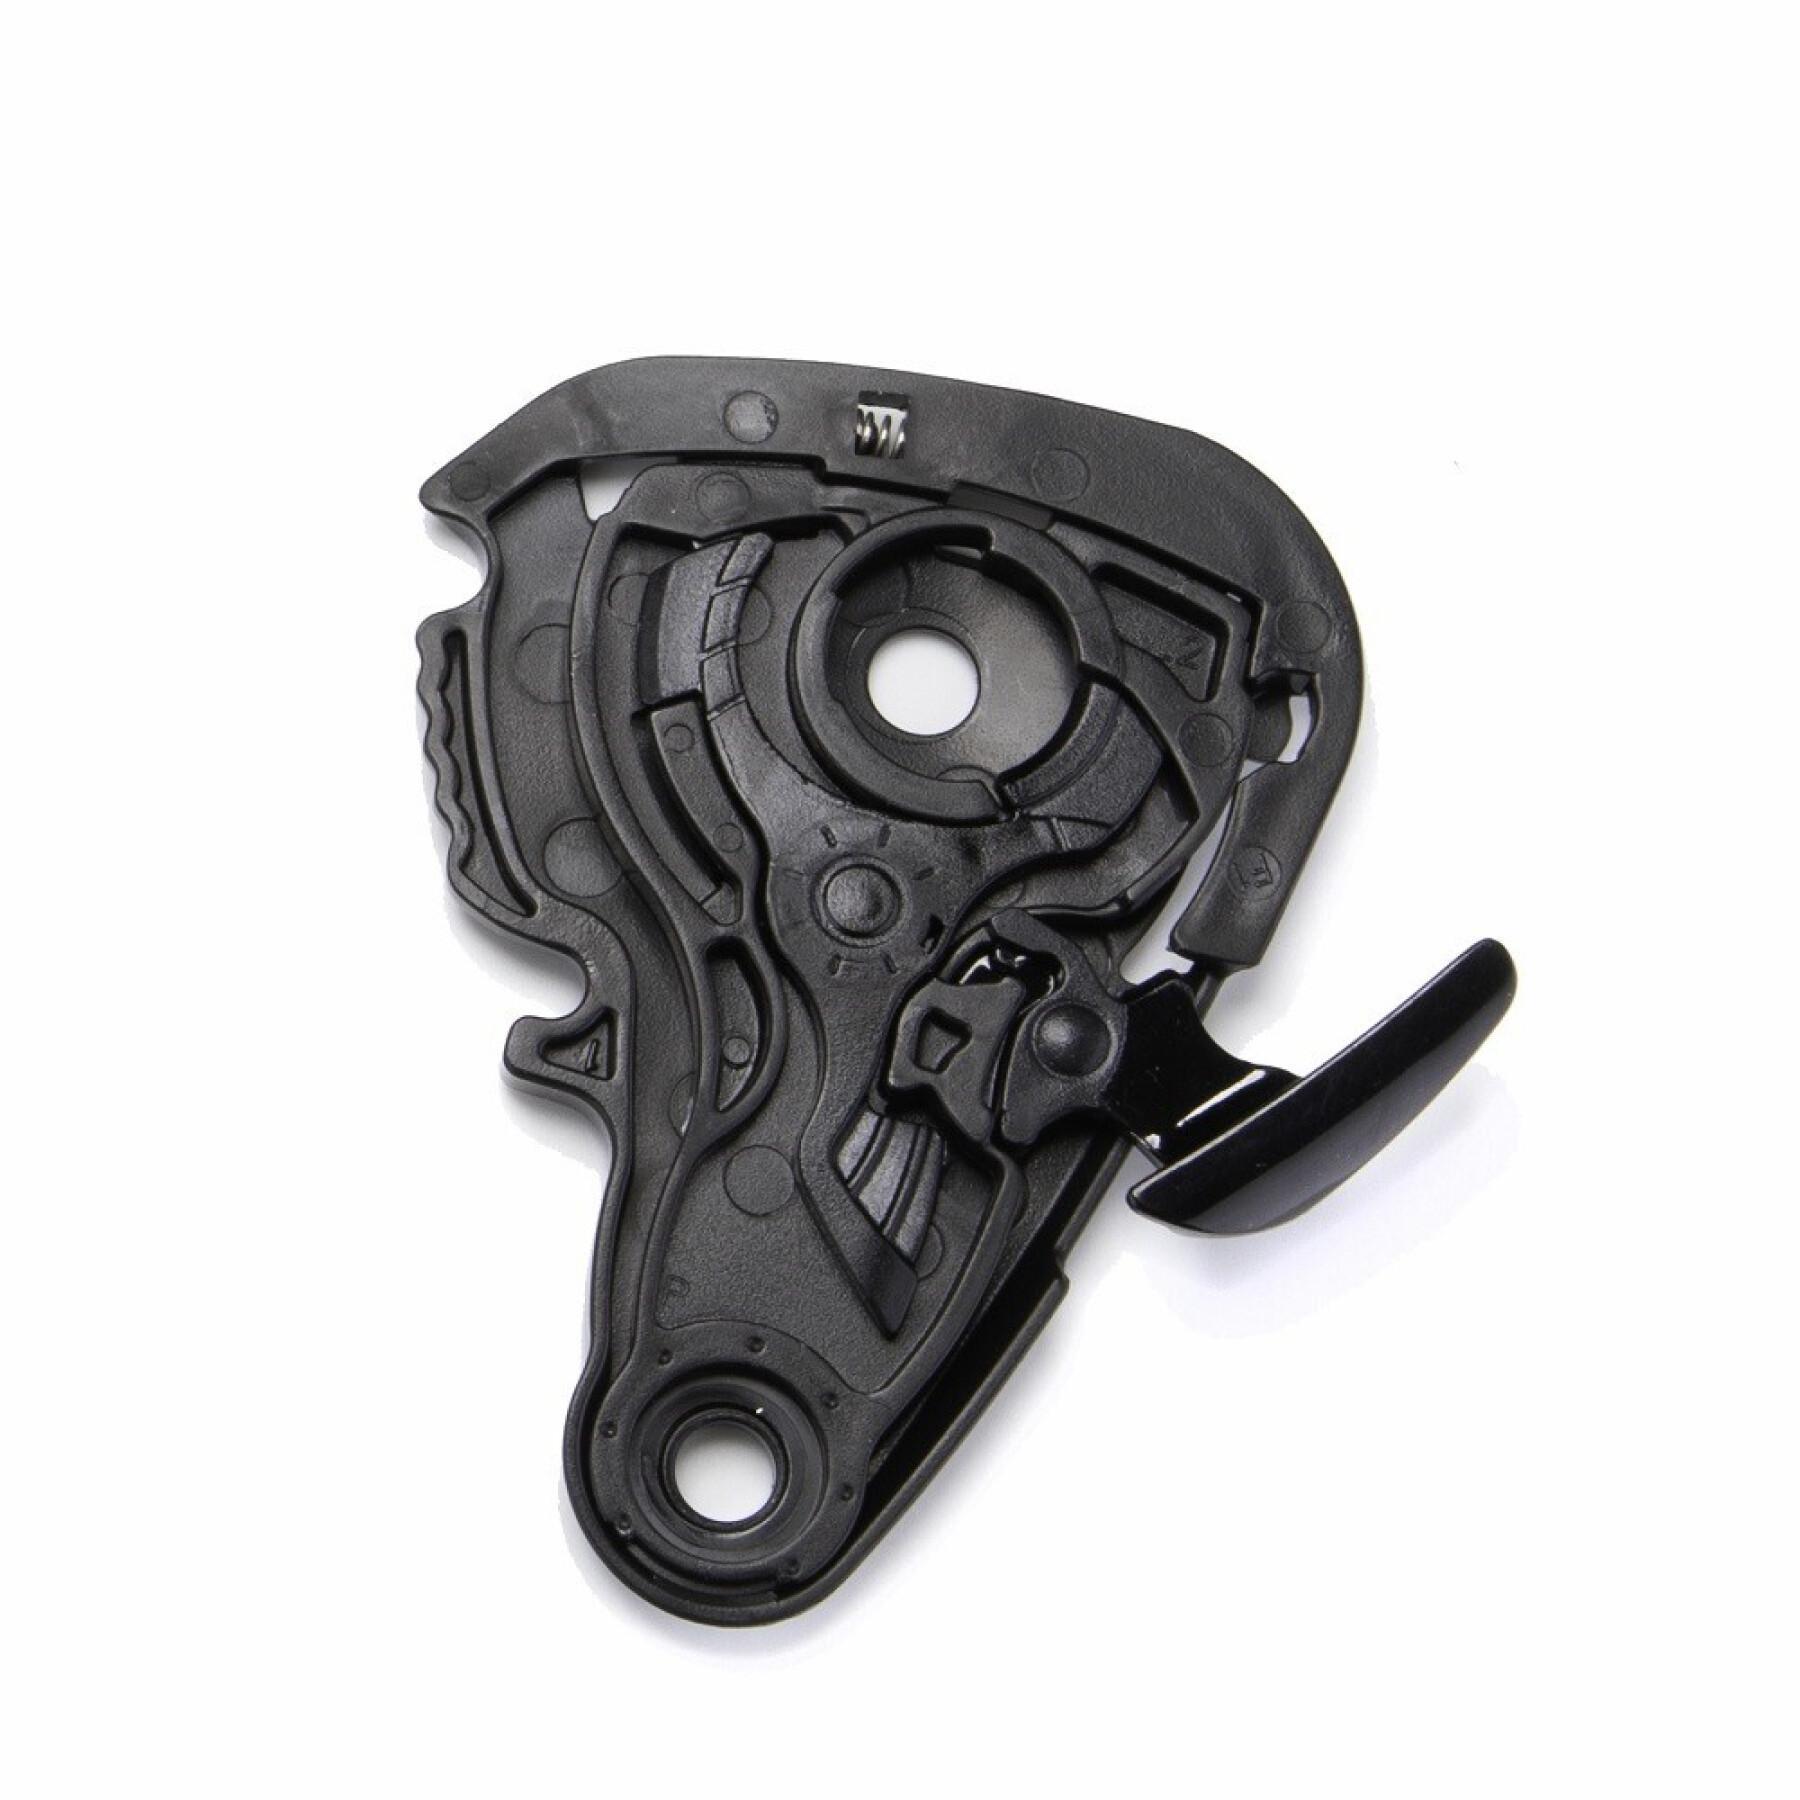 Kit zur Befestigung des Motorradvisiers Scorpion Exo-920 / 3000 Air Shield